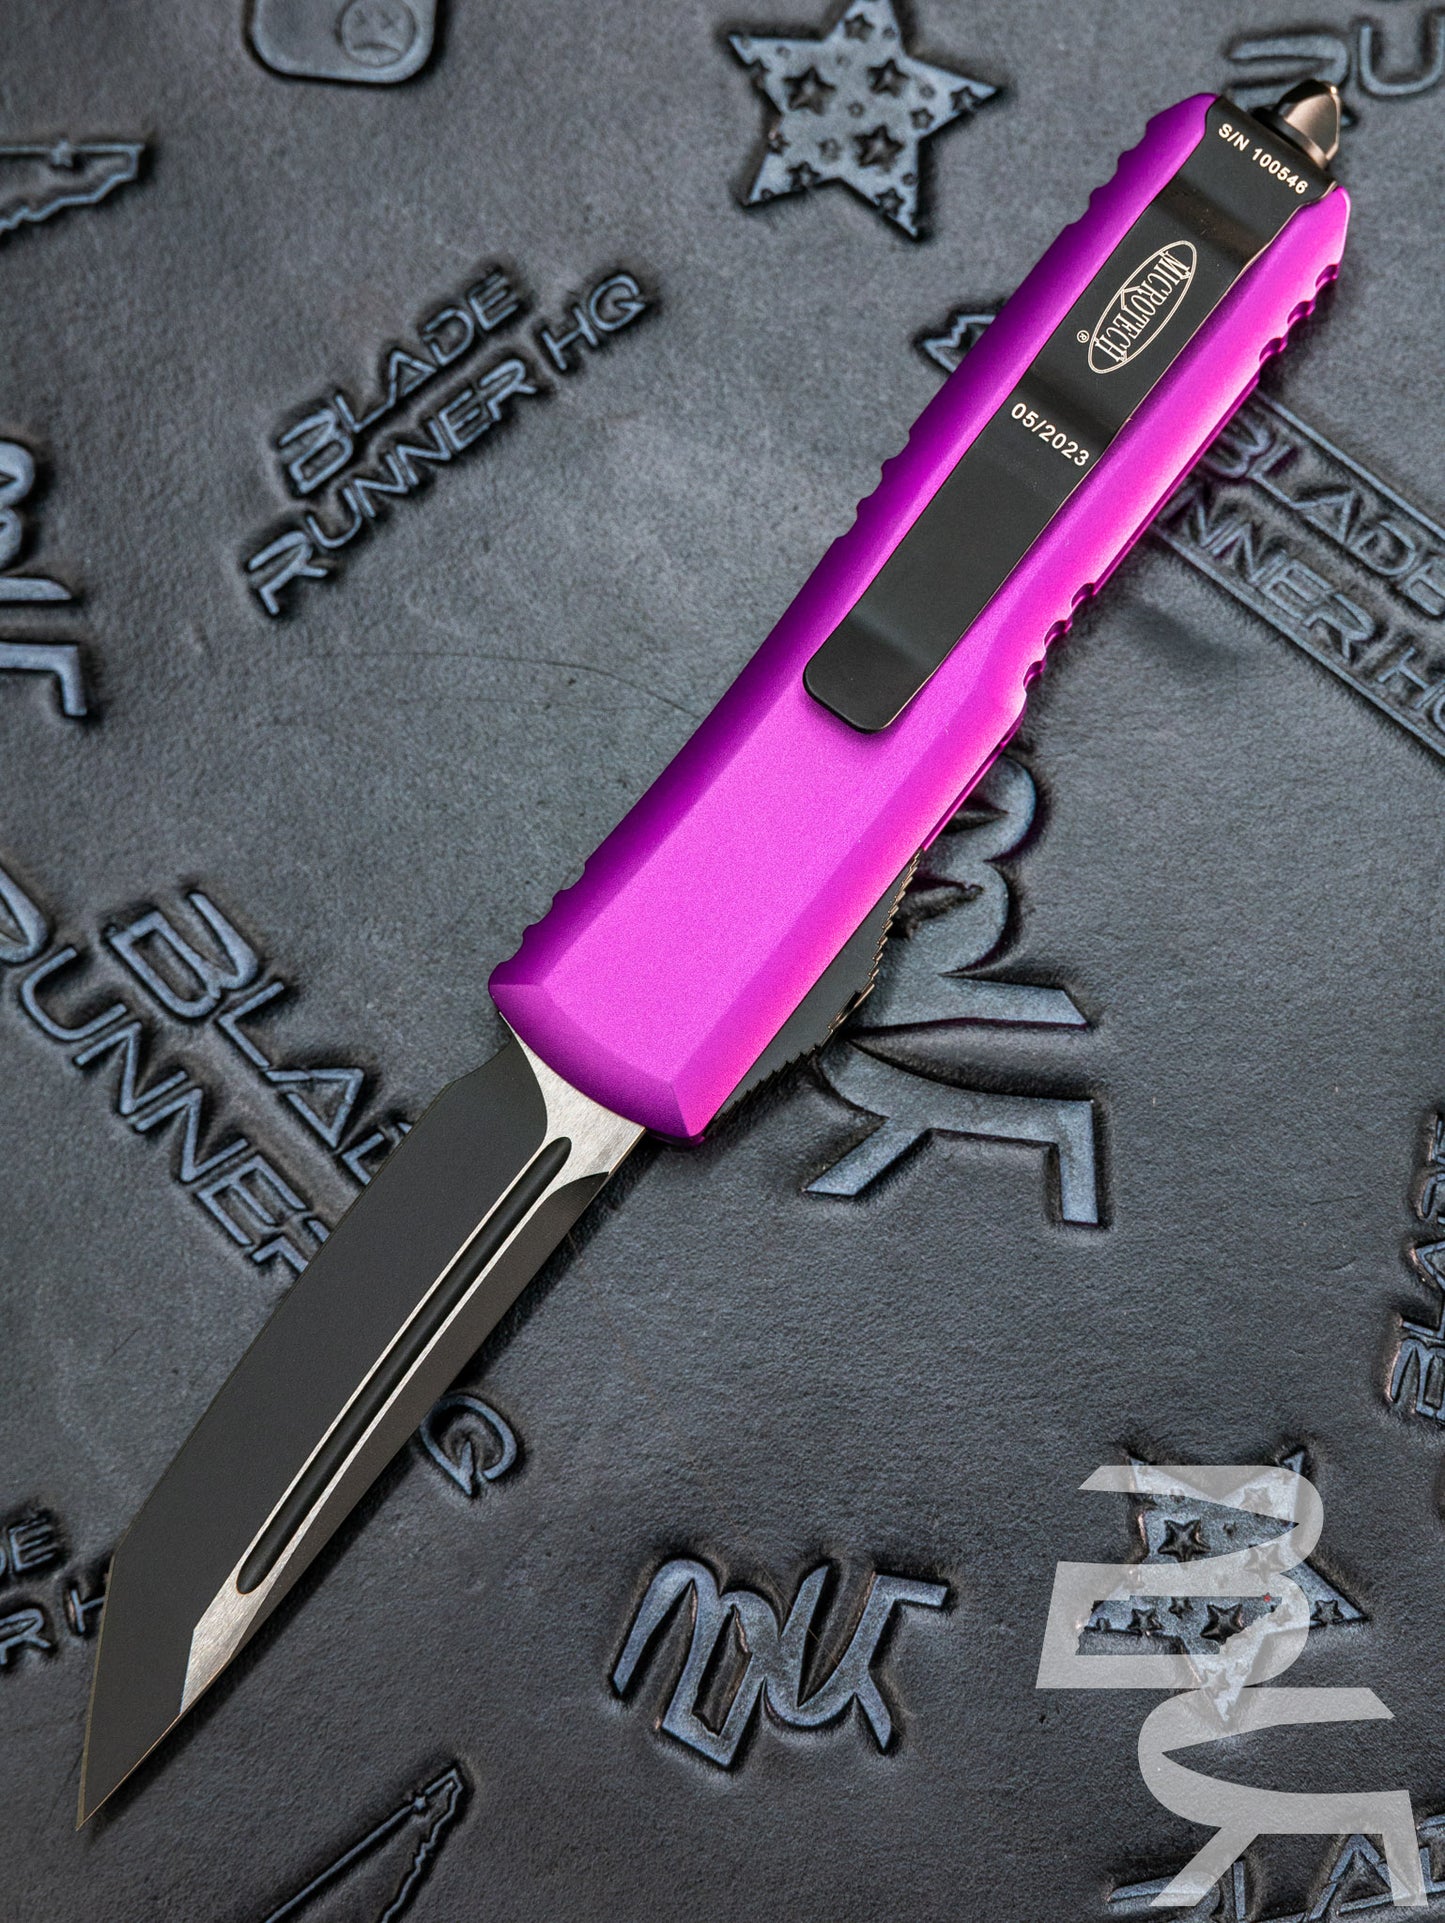 MICROTECH UTX-85 OTF KNIFE- TANTO EDGE- VIOLET HANDLE- BLACK BLADE 233-1 VI